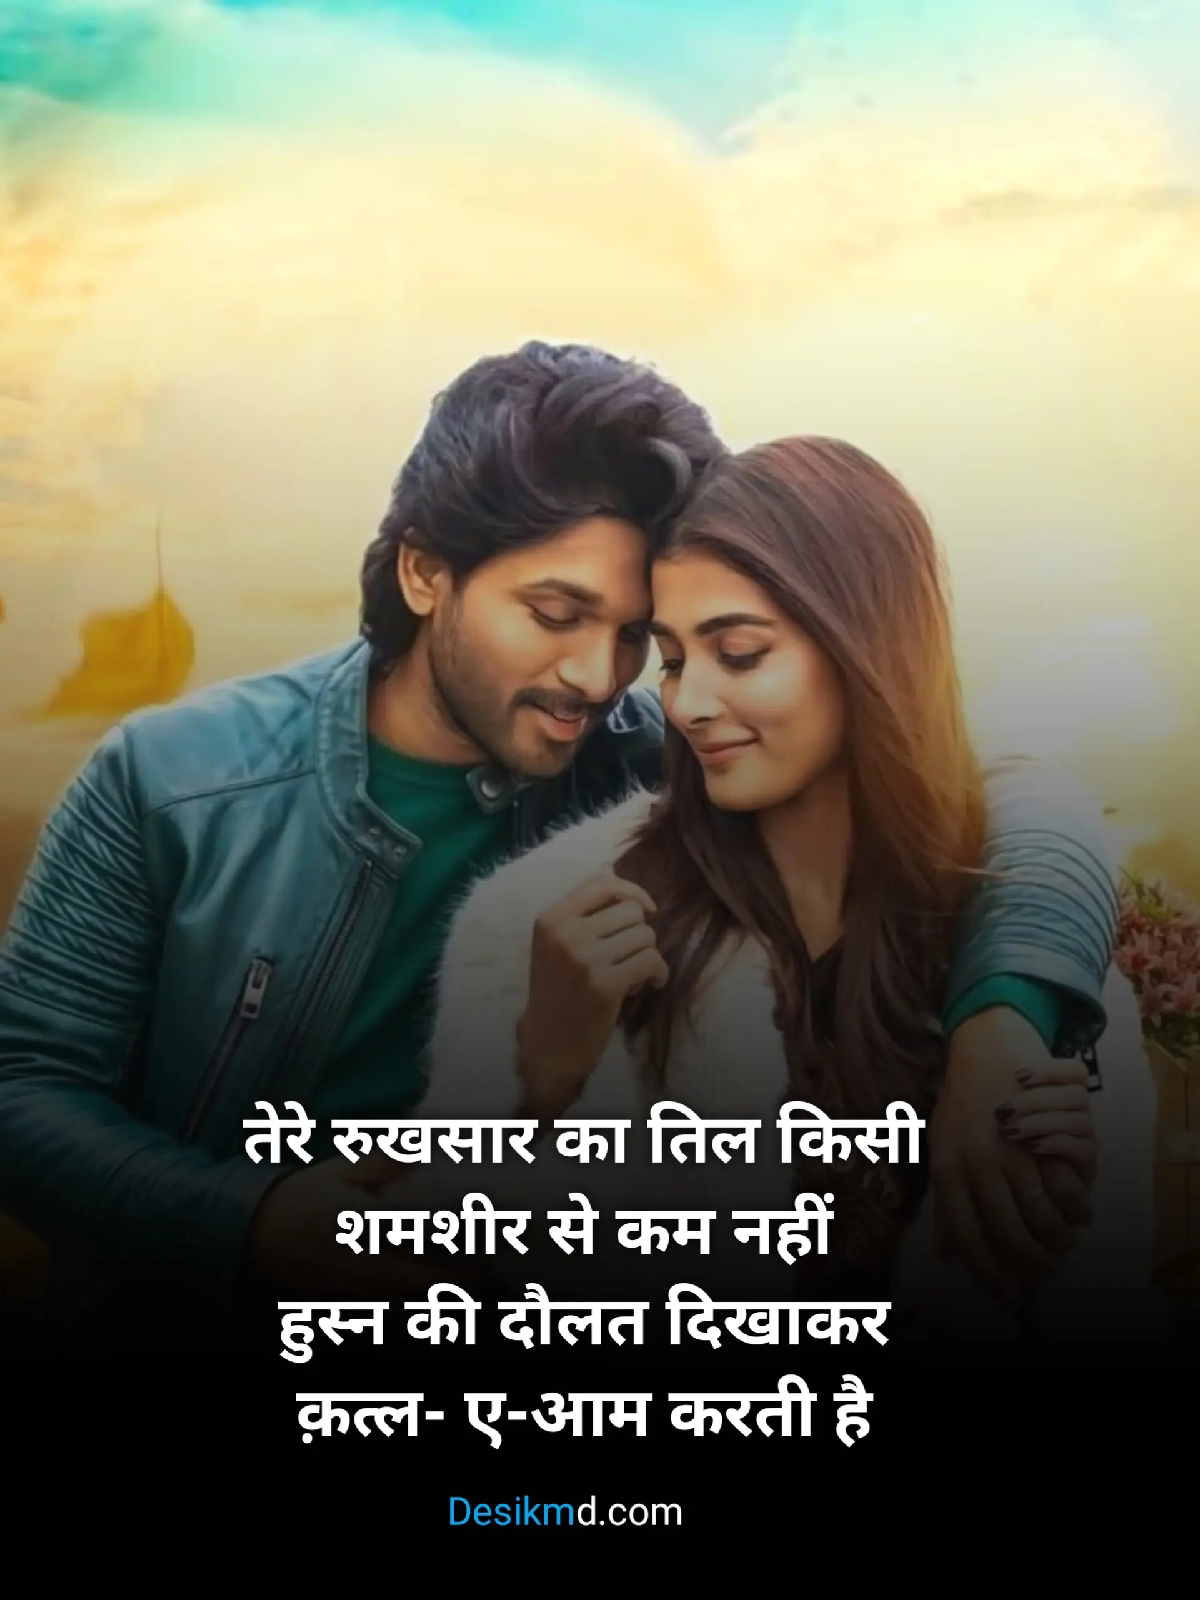 romantic shayari in hindi,romantic shayari in hindi for girlfriend, Love shayari in Hindi,Loveshayari, whatsappstatus,newlovestatus,#lovestory,dp shay